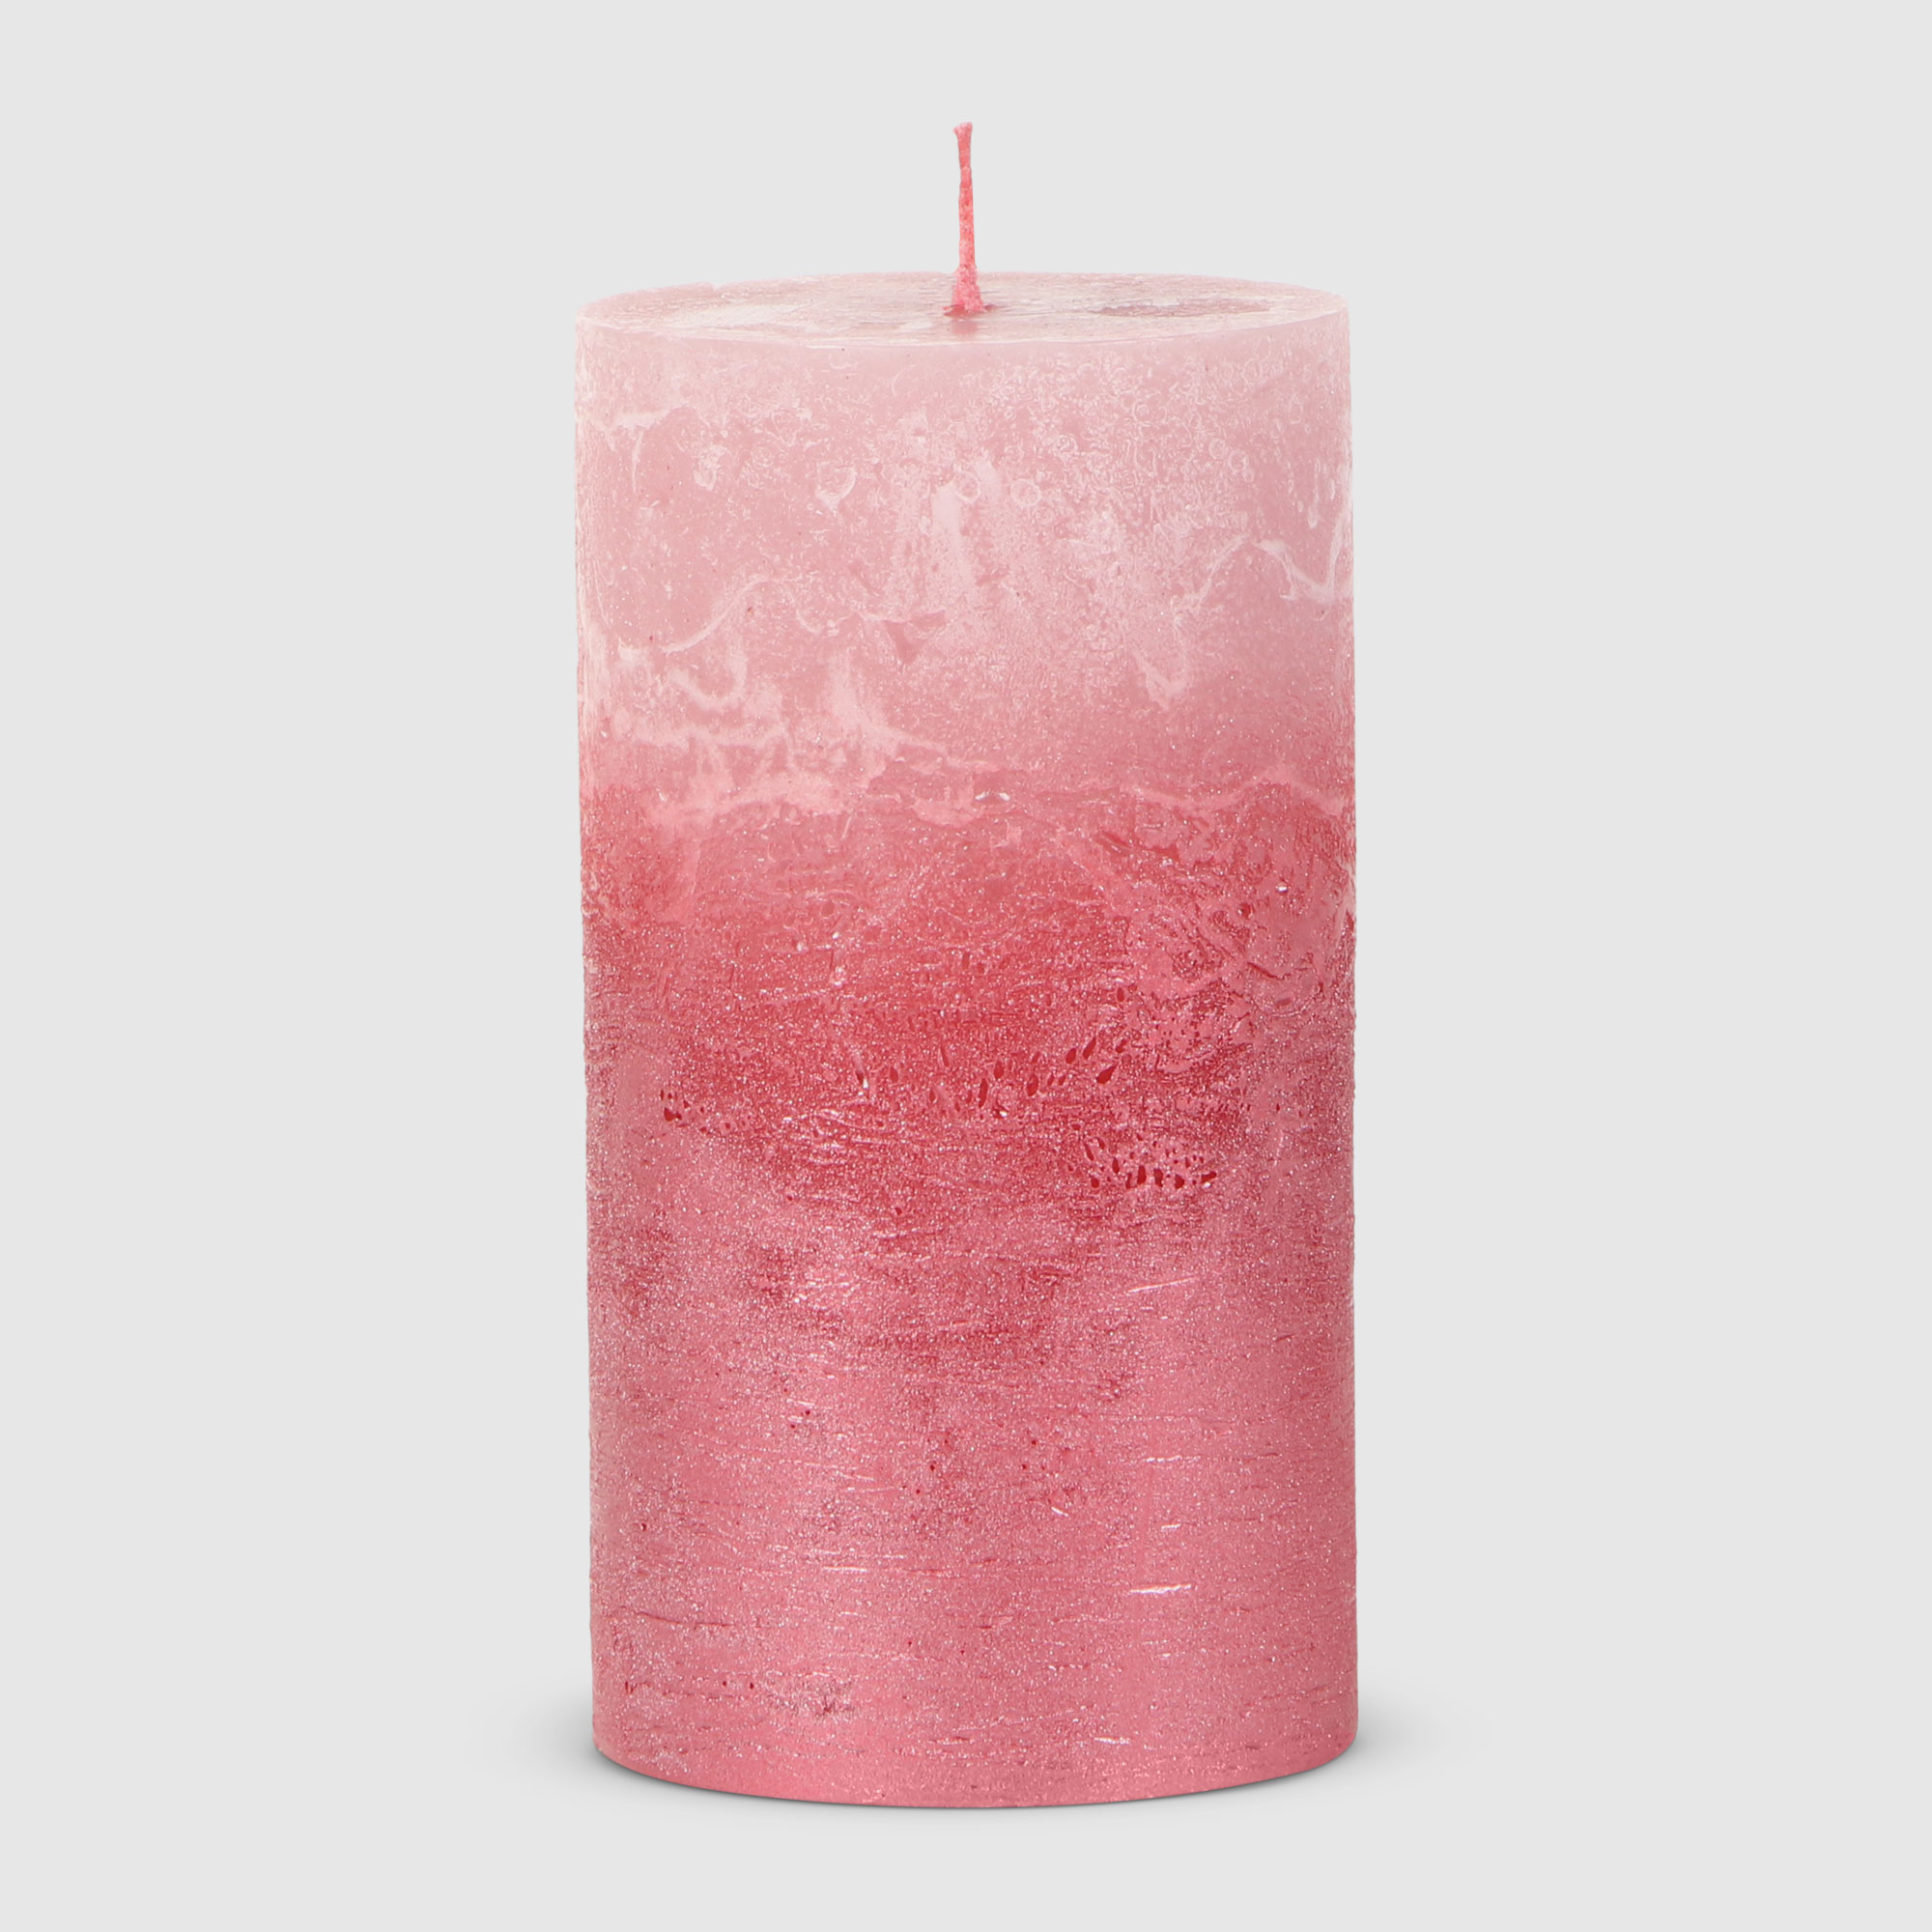 богатство аромата свеча ароматическая в банке розовый ок кактуса 12 г Свеча столбик рустик Home Interiors розовый+лак 7х13 см